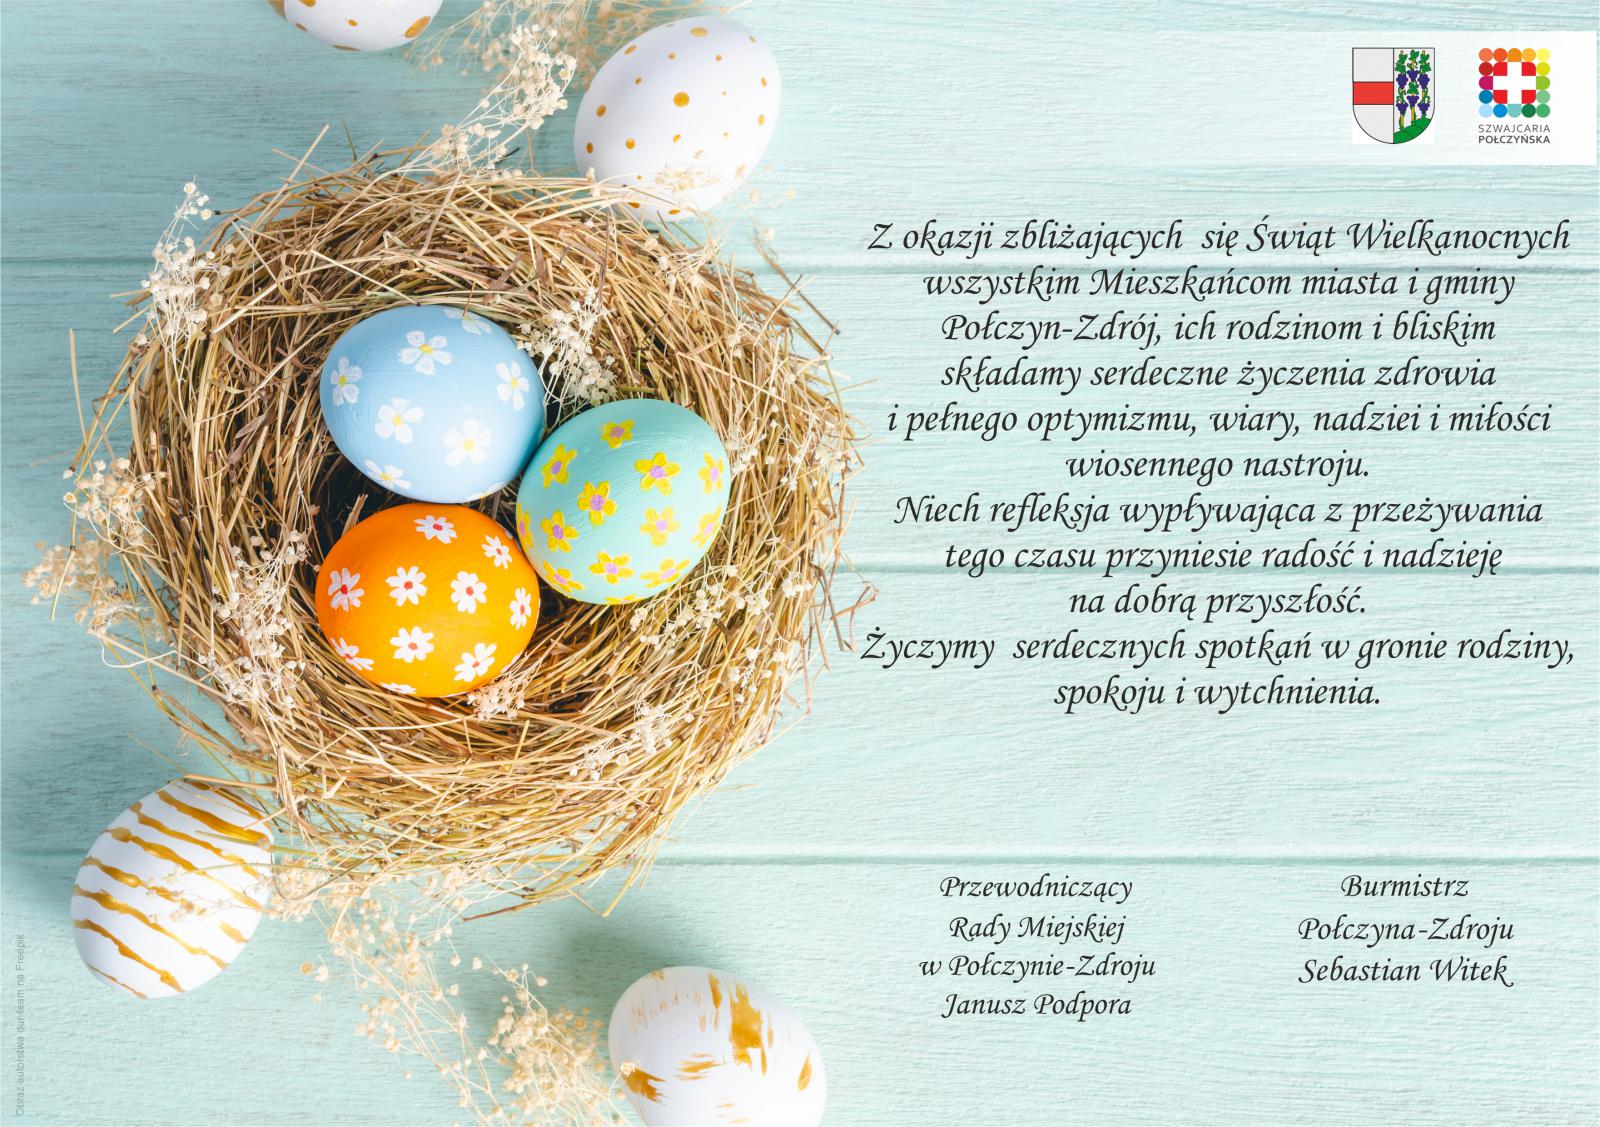 Życzenia Wielkanocne od Burmistrza Połczyna-Zdroju oraz Przewodniczącego Rady Miejskiej